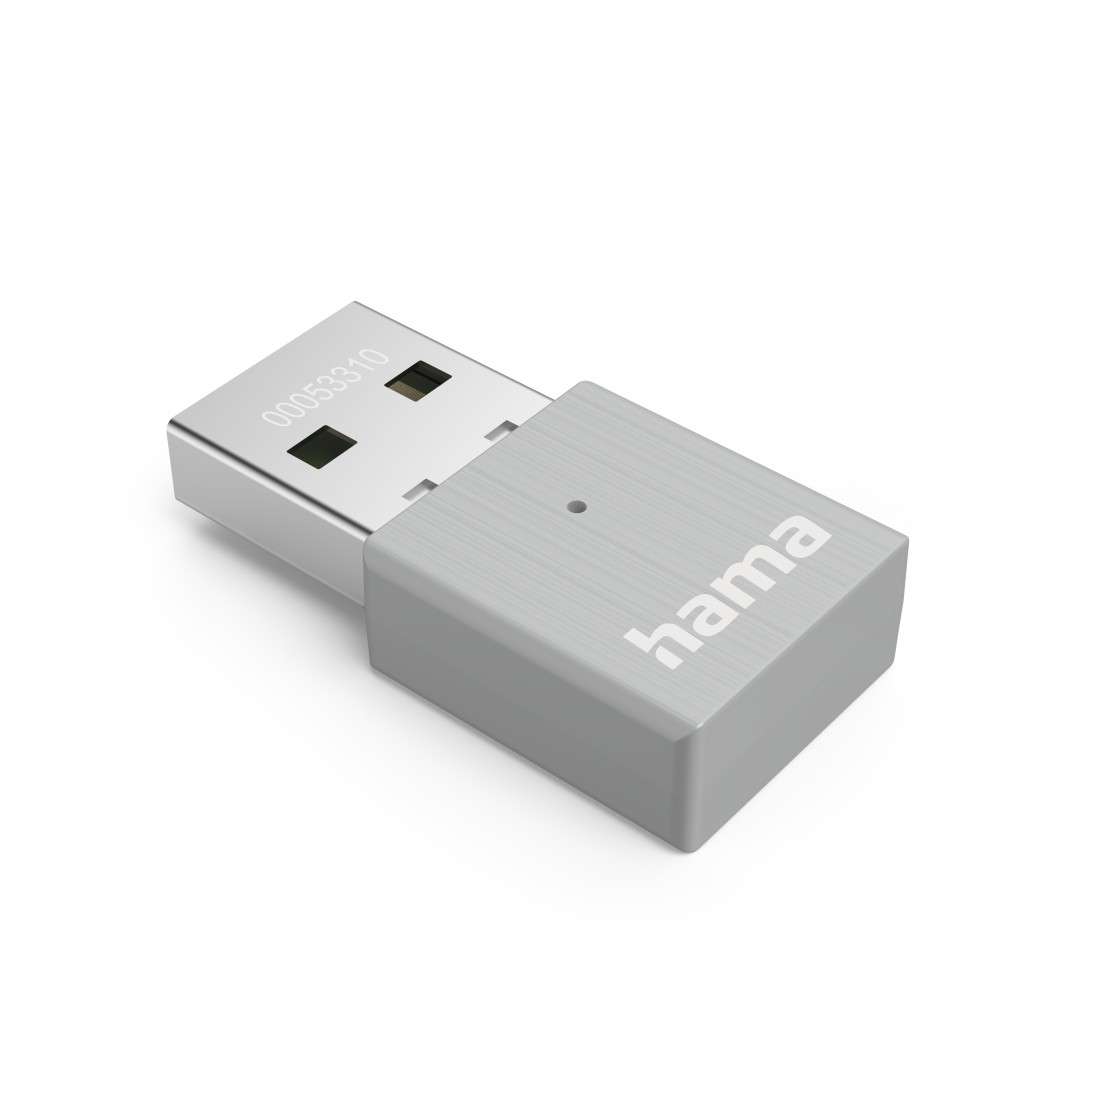 HAMA AC600 Nano-WLAN-USB-Stick, 2.4/5 GHz